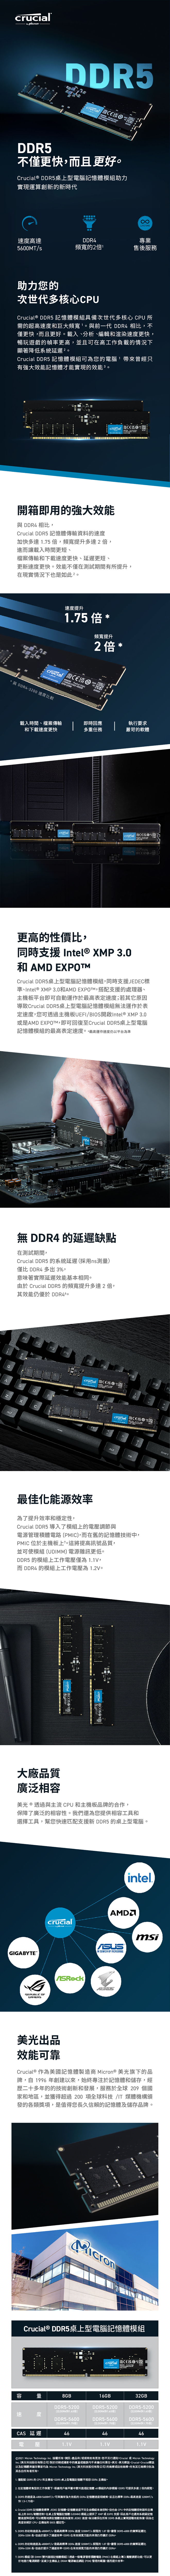 AN ALT速度高達56MT/DDR5不僅更快而且更好 與 DDR30 速度較rucial® DDR5上型電腦記憶體助力實現運算創新新時代助力您次世代多核心PU載入時間檔案傳輸下載速度更快定速Crucial® DDR5 記憶體模組具備次世代多核心 CPU 所需超高速度和巨大' 與前一代 DDR4 相比不僅更快而且更好載入分析、編輯和渲染速度更快暢玩遊戲的幀率更高並且可在高工作負載的情況下顯著降低系統延遲Crucial DDR5 記憶體模組可為您的電腦帶來曾經只有強大效能記憶體才能實現的效能 3 開箱即用的強大效能與 DDR4 相比Crucial DDR5 記憶體傳輸資料的速度加快多達 75 倍提升多達2倍進而讓載入時間更短、檔案傳輸和下載速度更快、延遲更短、更新速度更快。效能不僅在測試期間有所提升在現實情況下也是如此。4由FI度,您F2容iaGIGABYTE大廠品廣泛相REPUBLIC OFGAMERS更高的性價比,同時支援 Intel® XMP 30 EXPO.可量速度CAS延遲電 壓 C  Crucial DDR5桌上型電腦記憶體模組,同時支援JEDEC標l®EXDPOM,搭配支援的處理器、、Inte板平XMP 3.0和AM台即可 自動運作於主機導致Cruc4. Crucial DDR5 記憶5. DDR5 的初始速度DDR43200 ,美光品效能可靠6. DDR5 的初始速度DDR4-3200 或是AMEXPD記憶體模組的最高表定速度。最高運作速度仍以平台為準體7. DDR5 模組即 DI無 DDR4 的延遲缺點在測試期間,CrucialDDR5 的系統延遲 採用ns測量僅比 DDR4 多出 3%,味著 延遲 效 能基本相同。Crucial DDR5 的 頻 寬 提 升多達2倍,效 能仍優於 DDR4。意於其OM,F3為DDR5透過主機板U為4800MM是標好地進行 電源調節,質容4800並速度提升1.75 倍   - DlDR5桌上型電腦記憶體模組無法運作於表XMP 3.0ntel®5桌上型電腦CPU 和主機板品透過與主流crucial DDR4頻寬的2倍MT即可回 復F4  Technology Inc. 版權所有Inc. (美光科技股份有限公司對於印刷 或攝影中的遺以及記憶 體與儲漏存其各自所有者所有。MT/憶憶板上(JEDEC 記準體 。記BIOS/韌體的控 制。在桌上型電腦記憶體體速度降低時 , 可以輕鬆地將記憶體高度依賴於CPU、主機板和 BIOS 穩定性。最佳化能源效率定性,為了提升效率 和穩Crucial DDR5 導入了模組上的電壓調節與電源管理體 電 (PMIC,路 而 在 舊的記憶體技術中,PMIC 位 於 主 機板上這 將 提 高訊 號品並可使 (UDIMM)組電 源 雜訊更低 。DDR5 的模組上工作 電 僅 1.1V,為而 DDR4 的 模 組 上 工作質,模壓電壓為1.2V。/s,是最減少主家和發的 各類獎 項,是 值得您長久信 賴的(雙列直插記憶crucial   Origin  s,是最機DDR5-5200(比DDR4快1.63倍)配8GBDDR5-5600(比DDR4快1.75倍)美光®牌的合作,保障了廣泛的相容 性。我們 還為您提供 相 容工具和選擇工具,幫 您快速 援 新 DDR5 的 上型電腦。匹支桌461.1V板上即時回應多重任務至最高EFI/BIOS開啟IDDialcrucial200 項全球科技 /IT 媒地區,並獲得超過CCrucial® 作為美國記憶體製造商 Micron® 美光旗下的品儲存,經牌,自 1996 年創建以來,始終專注於記憶體 和二十多年的 的技術 創 新 和歷體模組)DRAM頻寬提升2倍 *F5電源ruc輸)透過一個電送或錯誤Crucial® DDR5桌上型電腦記憶體模組1. 僅配備 DDR5 的 CPU 和主機板。DDR5 桌上型電腦記憶體不相容 DDR4 主機板。crucial 均DDR4 速度 3200MT/s高標準網路1 源表定速度;若其它原因F6不crucial  Micron承(PDN)IN SEARCH OF INCREDIBLE擔ALT管理積體R209 個國發展,服務於全球在有效頻寬方面的表現仍然優於 DDR4。但由於提升了通道效率,DDR5管DDR4 速度 3200MT/s 頻寬高標準在有效頻宽方面的表現仍然優於 DDR4,但由於提升了通道效率,DDR5記DDR5-5200(比DDR4快1.63倍)DDR5-5600(比DDR4快1.75倍)46任何16GB000000理1.1Vcrucial 責任的執行要求嚴苛的軟體電路(crucial 20 。Micron Technology Inc.(美光科技股份有限公司)的商標或註冊商標。所有其它商標分別為專家均為2. 在記憶體密集型的工作負載下,根據用戶端平臺中雙列直插記憶體 x8 模組的內部模擬,DDR5 可提供多達2倍的頻寬。3. DDR5 的速度為4800-5600MT/s,可與擁有強大效能的 DDR4 記憶體速度相媲美,並且比標準 DDR4 最高速度3200MT/s快 1.75倍。專業售後服務或Micron Technology。、產品和/或規格如有更改,通知。Crucial美光範圍,00LIFETIME、FN憶體及儲存crucial C美光intel.標體)  -msi機體速度由模控不完全 組本身控 制,但也 CPU由 中的 記憶體 制器和主機模組UDIMM) 上提供 XMP 或 EXPO 支援,因此 客戶在遇到系統級記憶了構頒品 牌。JEDEC 速度無法確保在所有 DDR5 系統上實現這種效能恢復,因為它效能恢復到32GBDDR5-5200(比DDR4快1.63倍)DDR5-5600(比DDR4快1.75倍)461.1V誌、Crucial、頻寬的 1.87 倍。儘管 DDR5-4800的實際延遲比Crucial標誌倍。儘管 DDR5-4800 的實際延遲比的1.87PMIC) 在模組上導入電壓調節功能,可以更而 提升 效率。進SHIFT